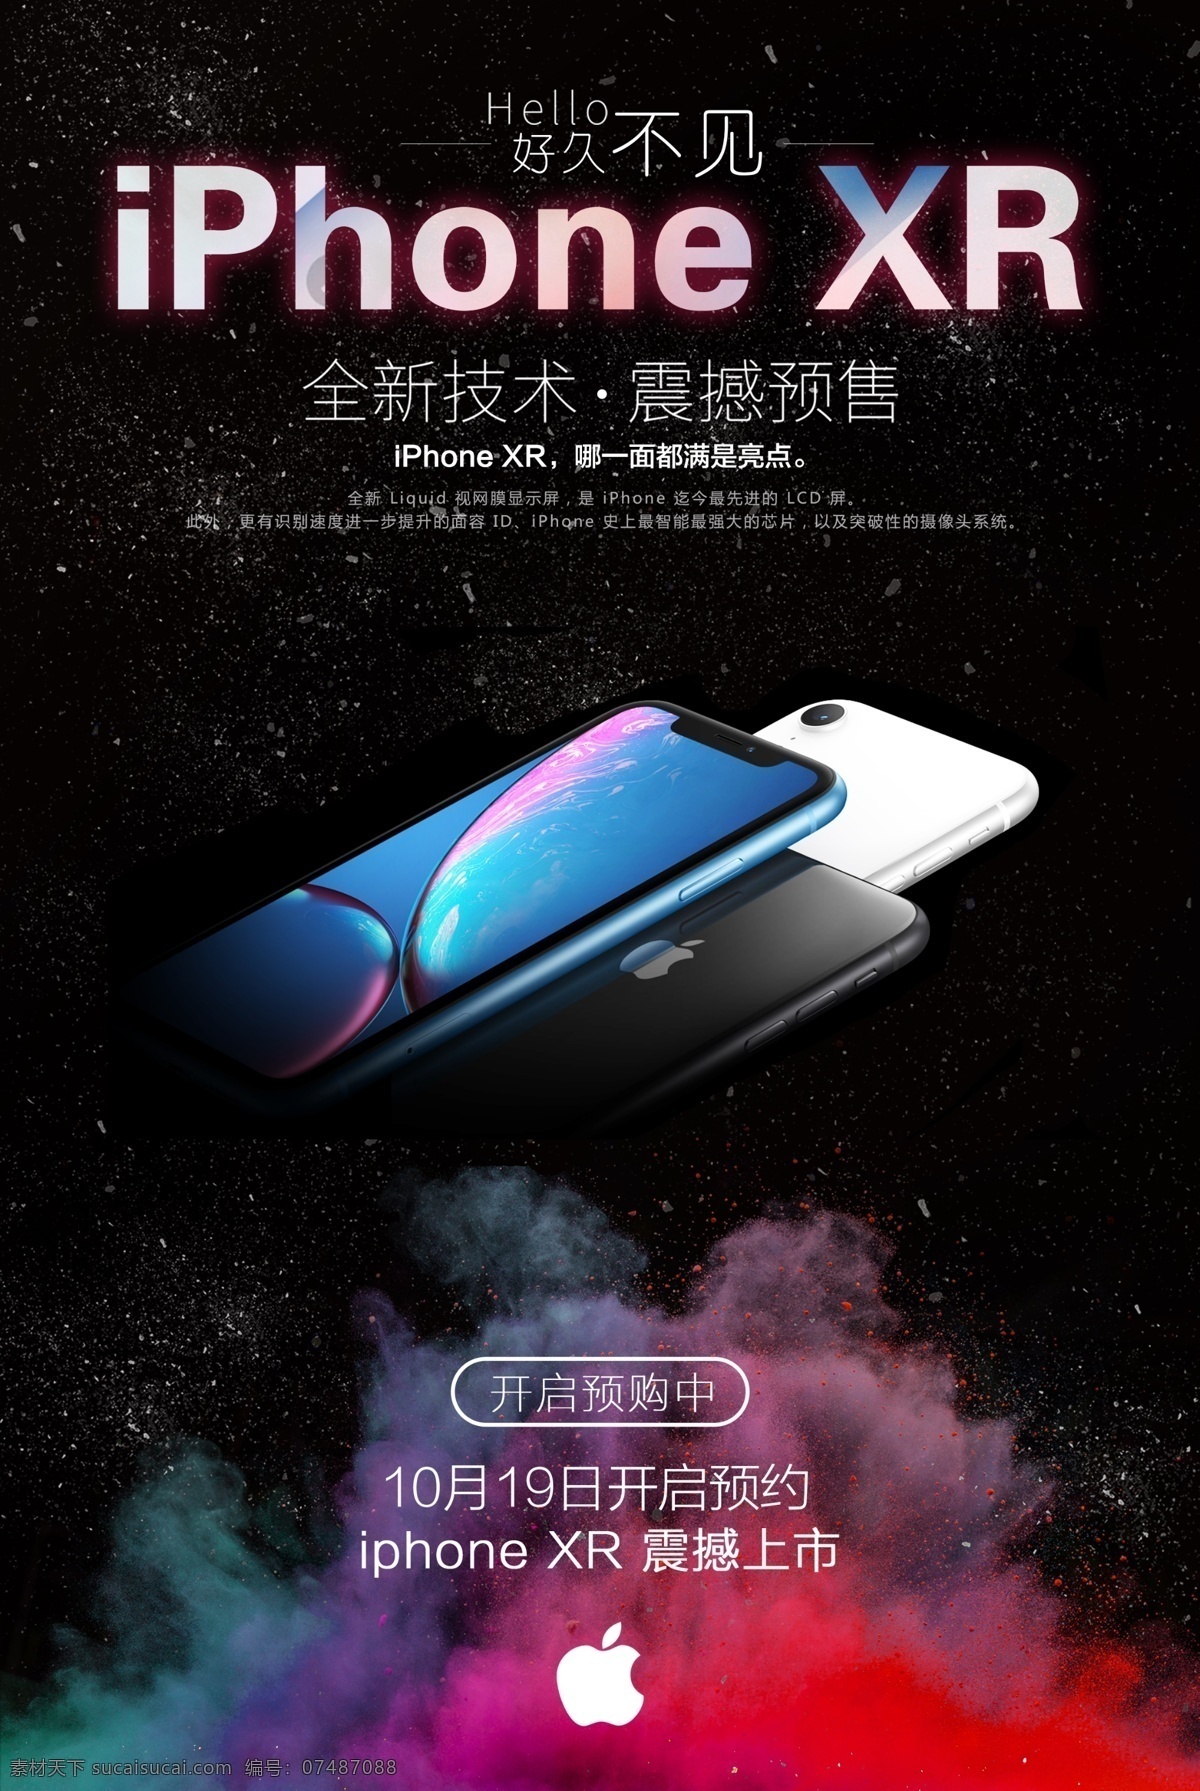 iphonexr 模板 促销 iphone 苹果 手机 海报 预售 缤纷